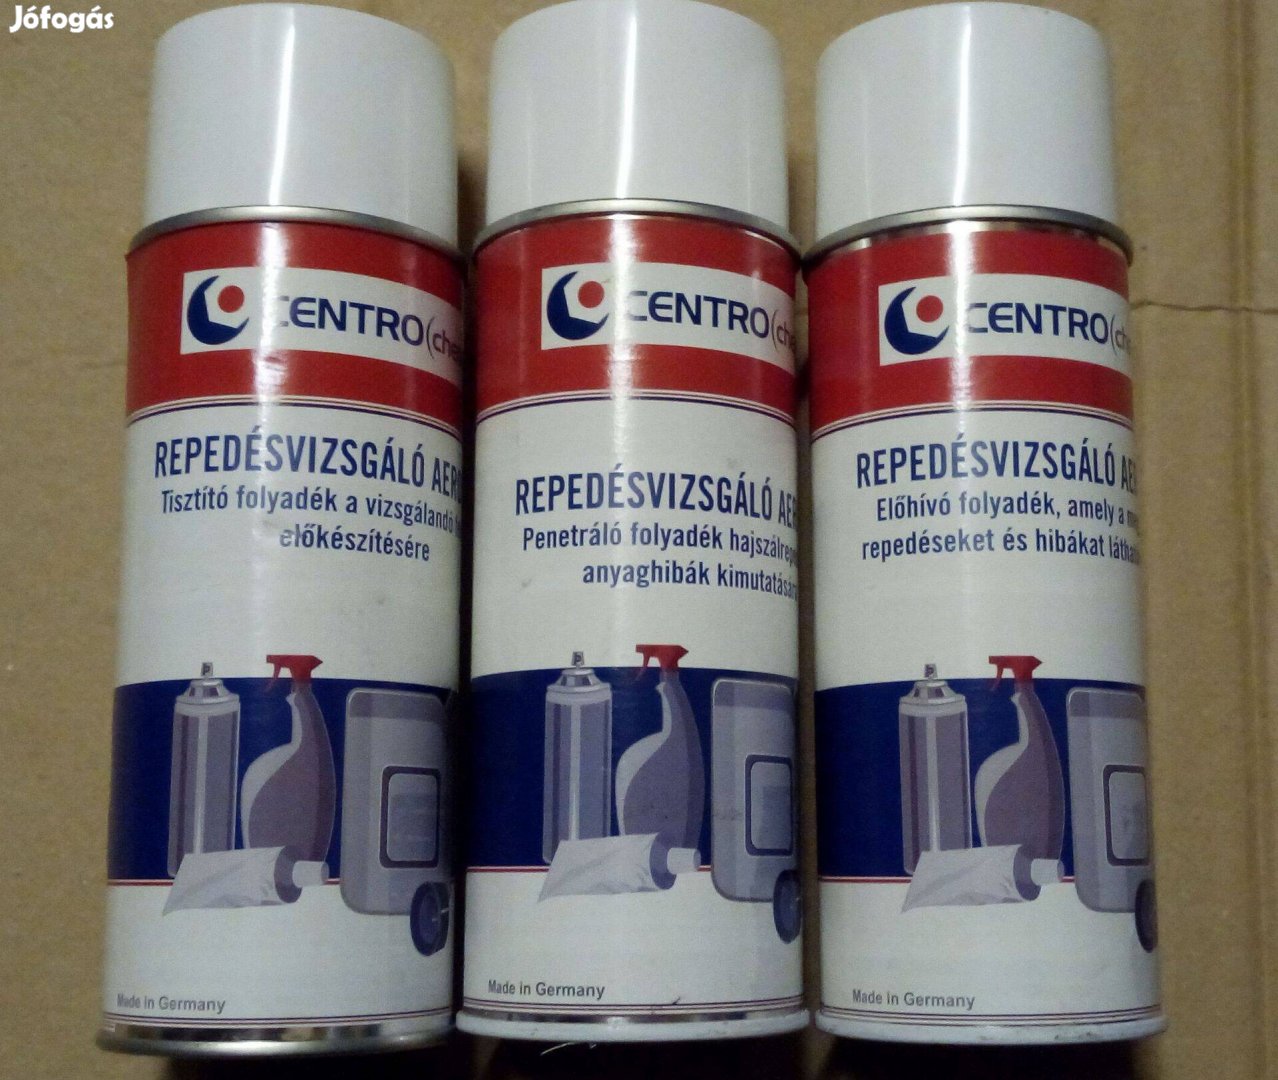 Centrochem repedésvizsgáló spray (3 lépcsős repedésvizsgáló)